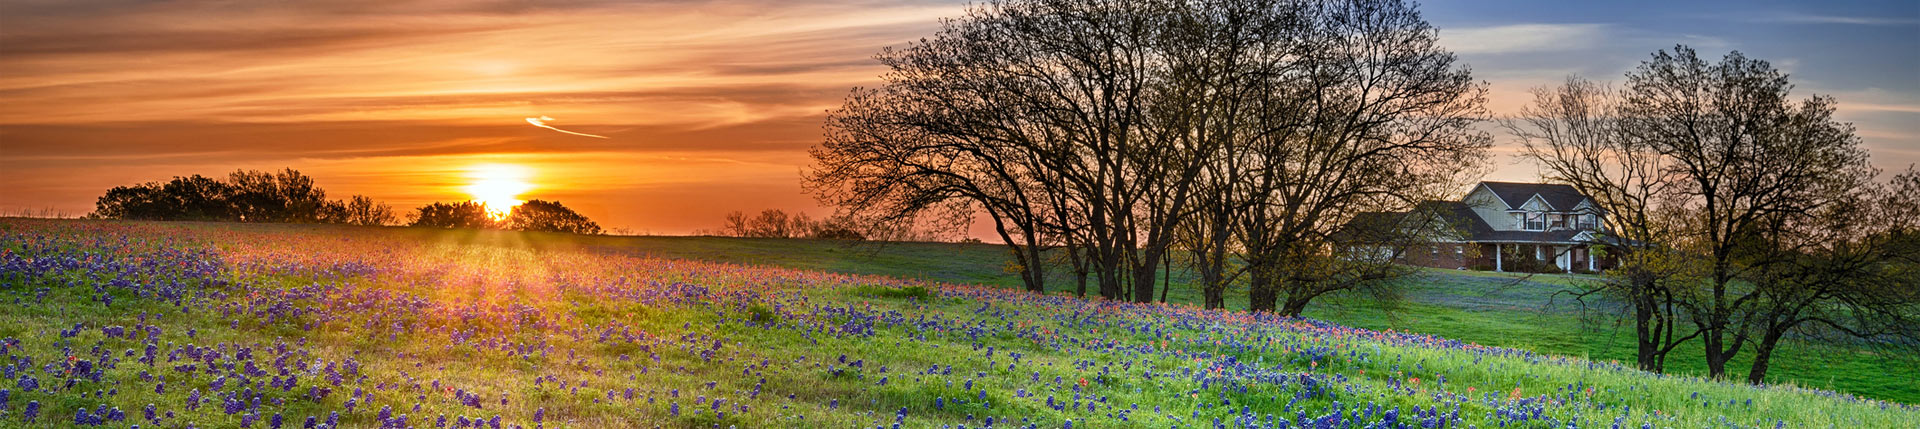 Scenic Texas Landscape